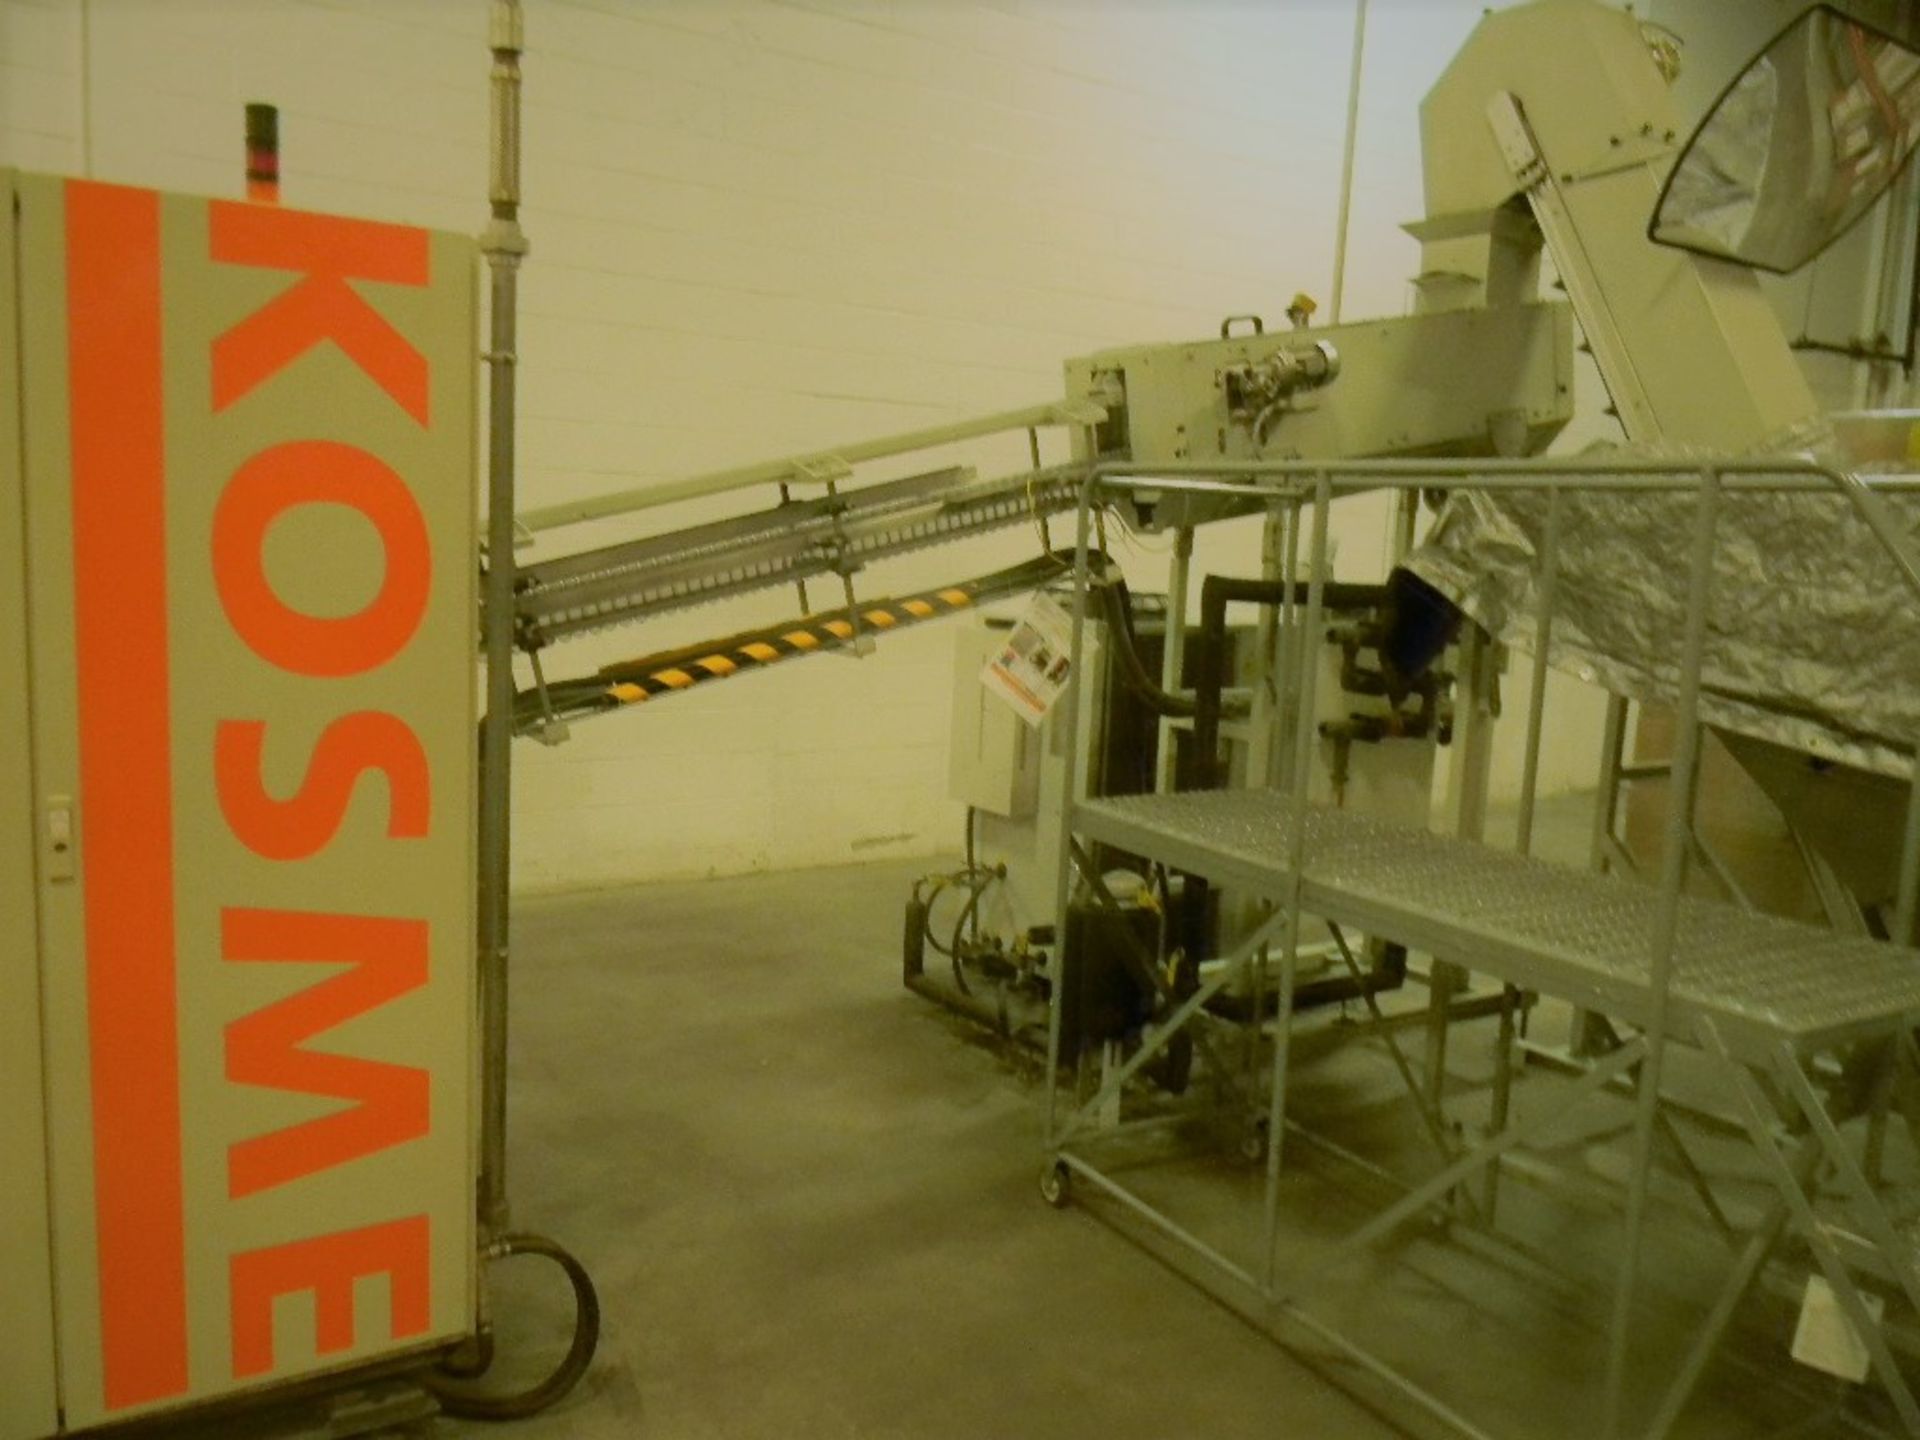 Kosme PET Stretch Blowmolder, Model: KSB2000, Serial Number: K2D0081, Includes Chiller - Image 5 of 10